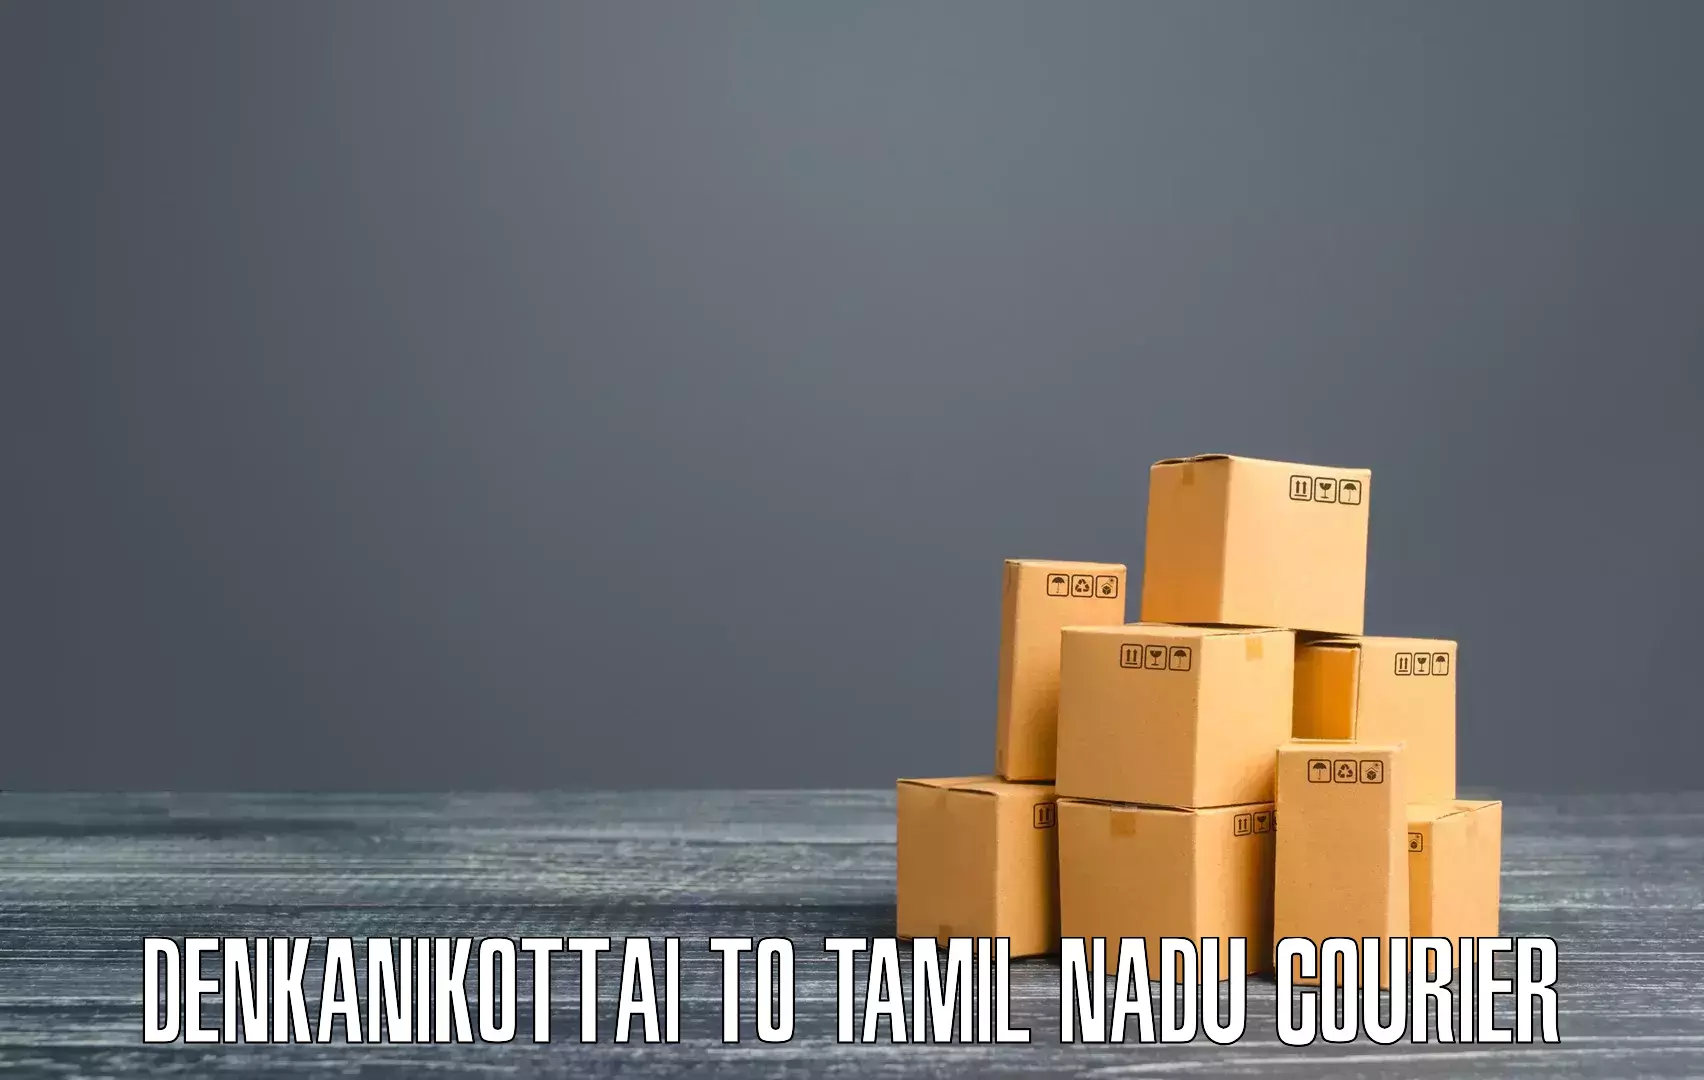 Courier app in Denkanikottai to Tamil Nadu